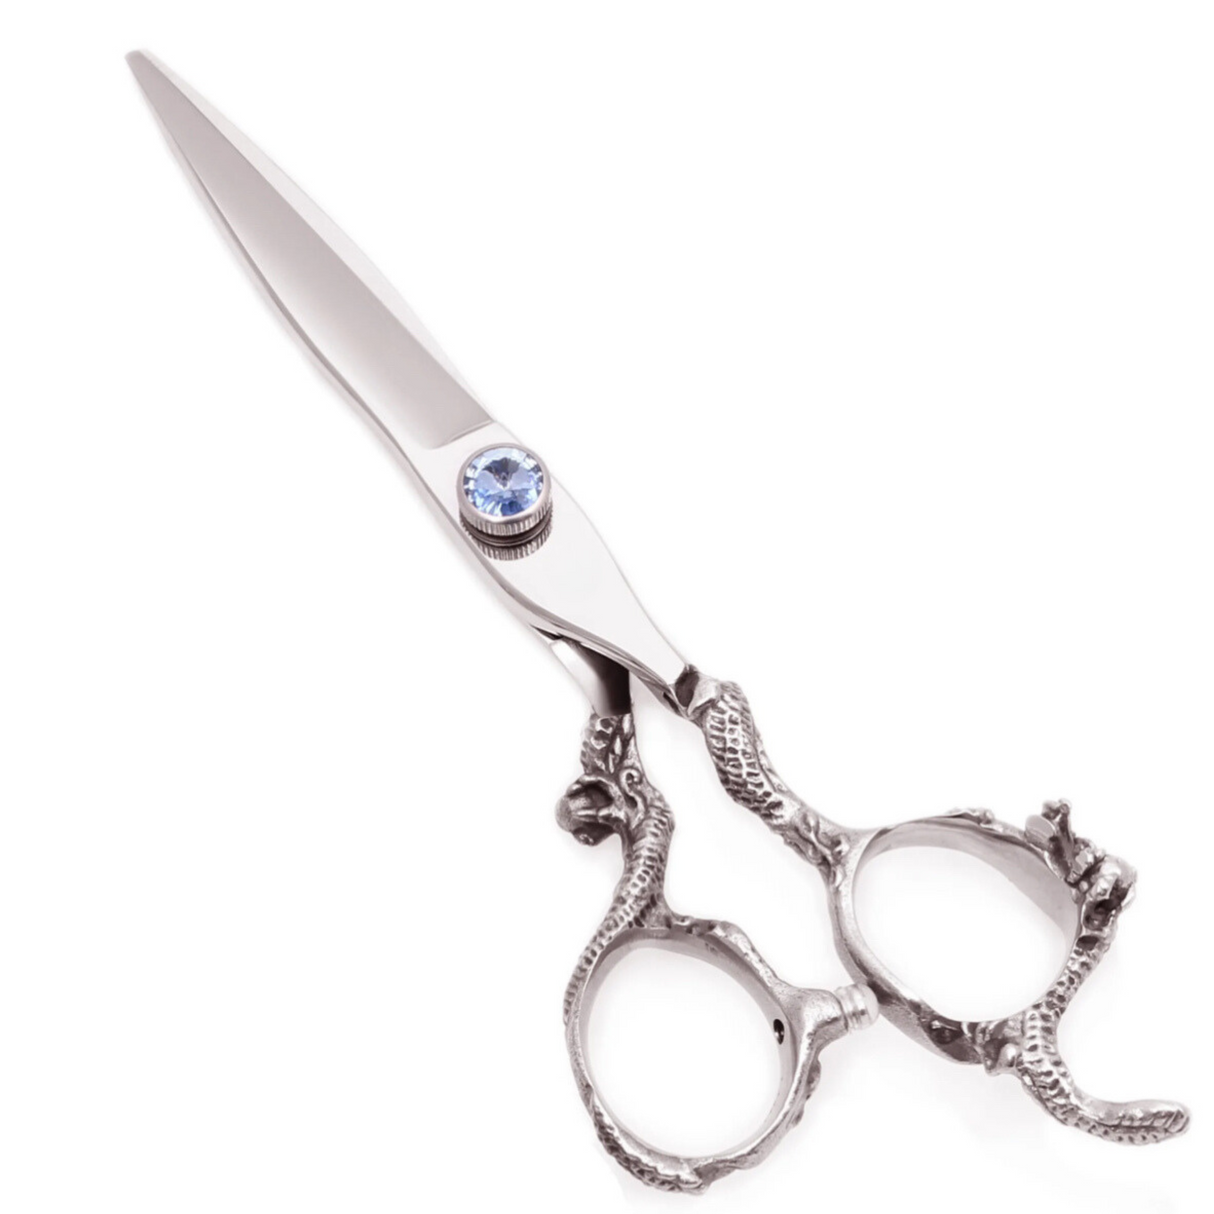 U.S HAIR Professional Premium Quality Scissors - 7” - Theresia Cosmetics - Scissors - Theresia Cosmetics